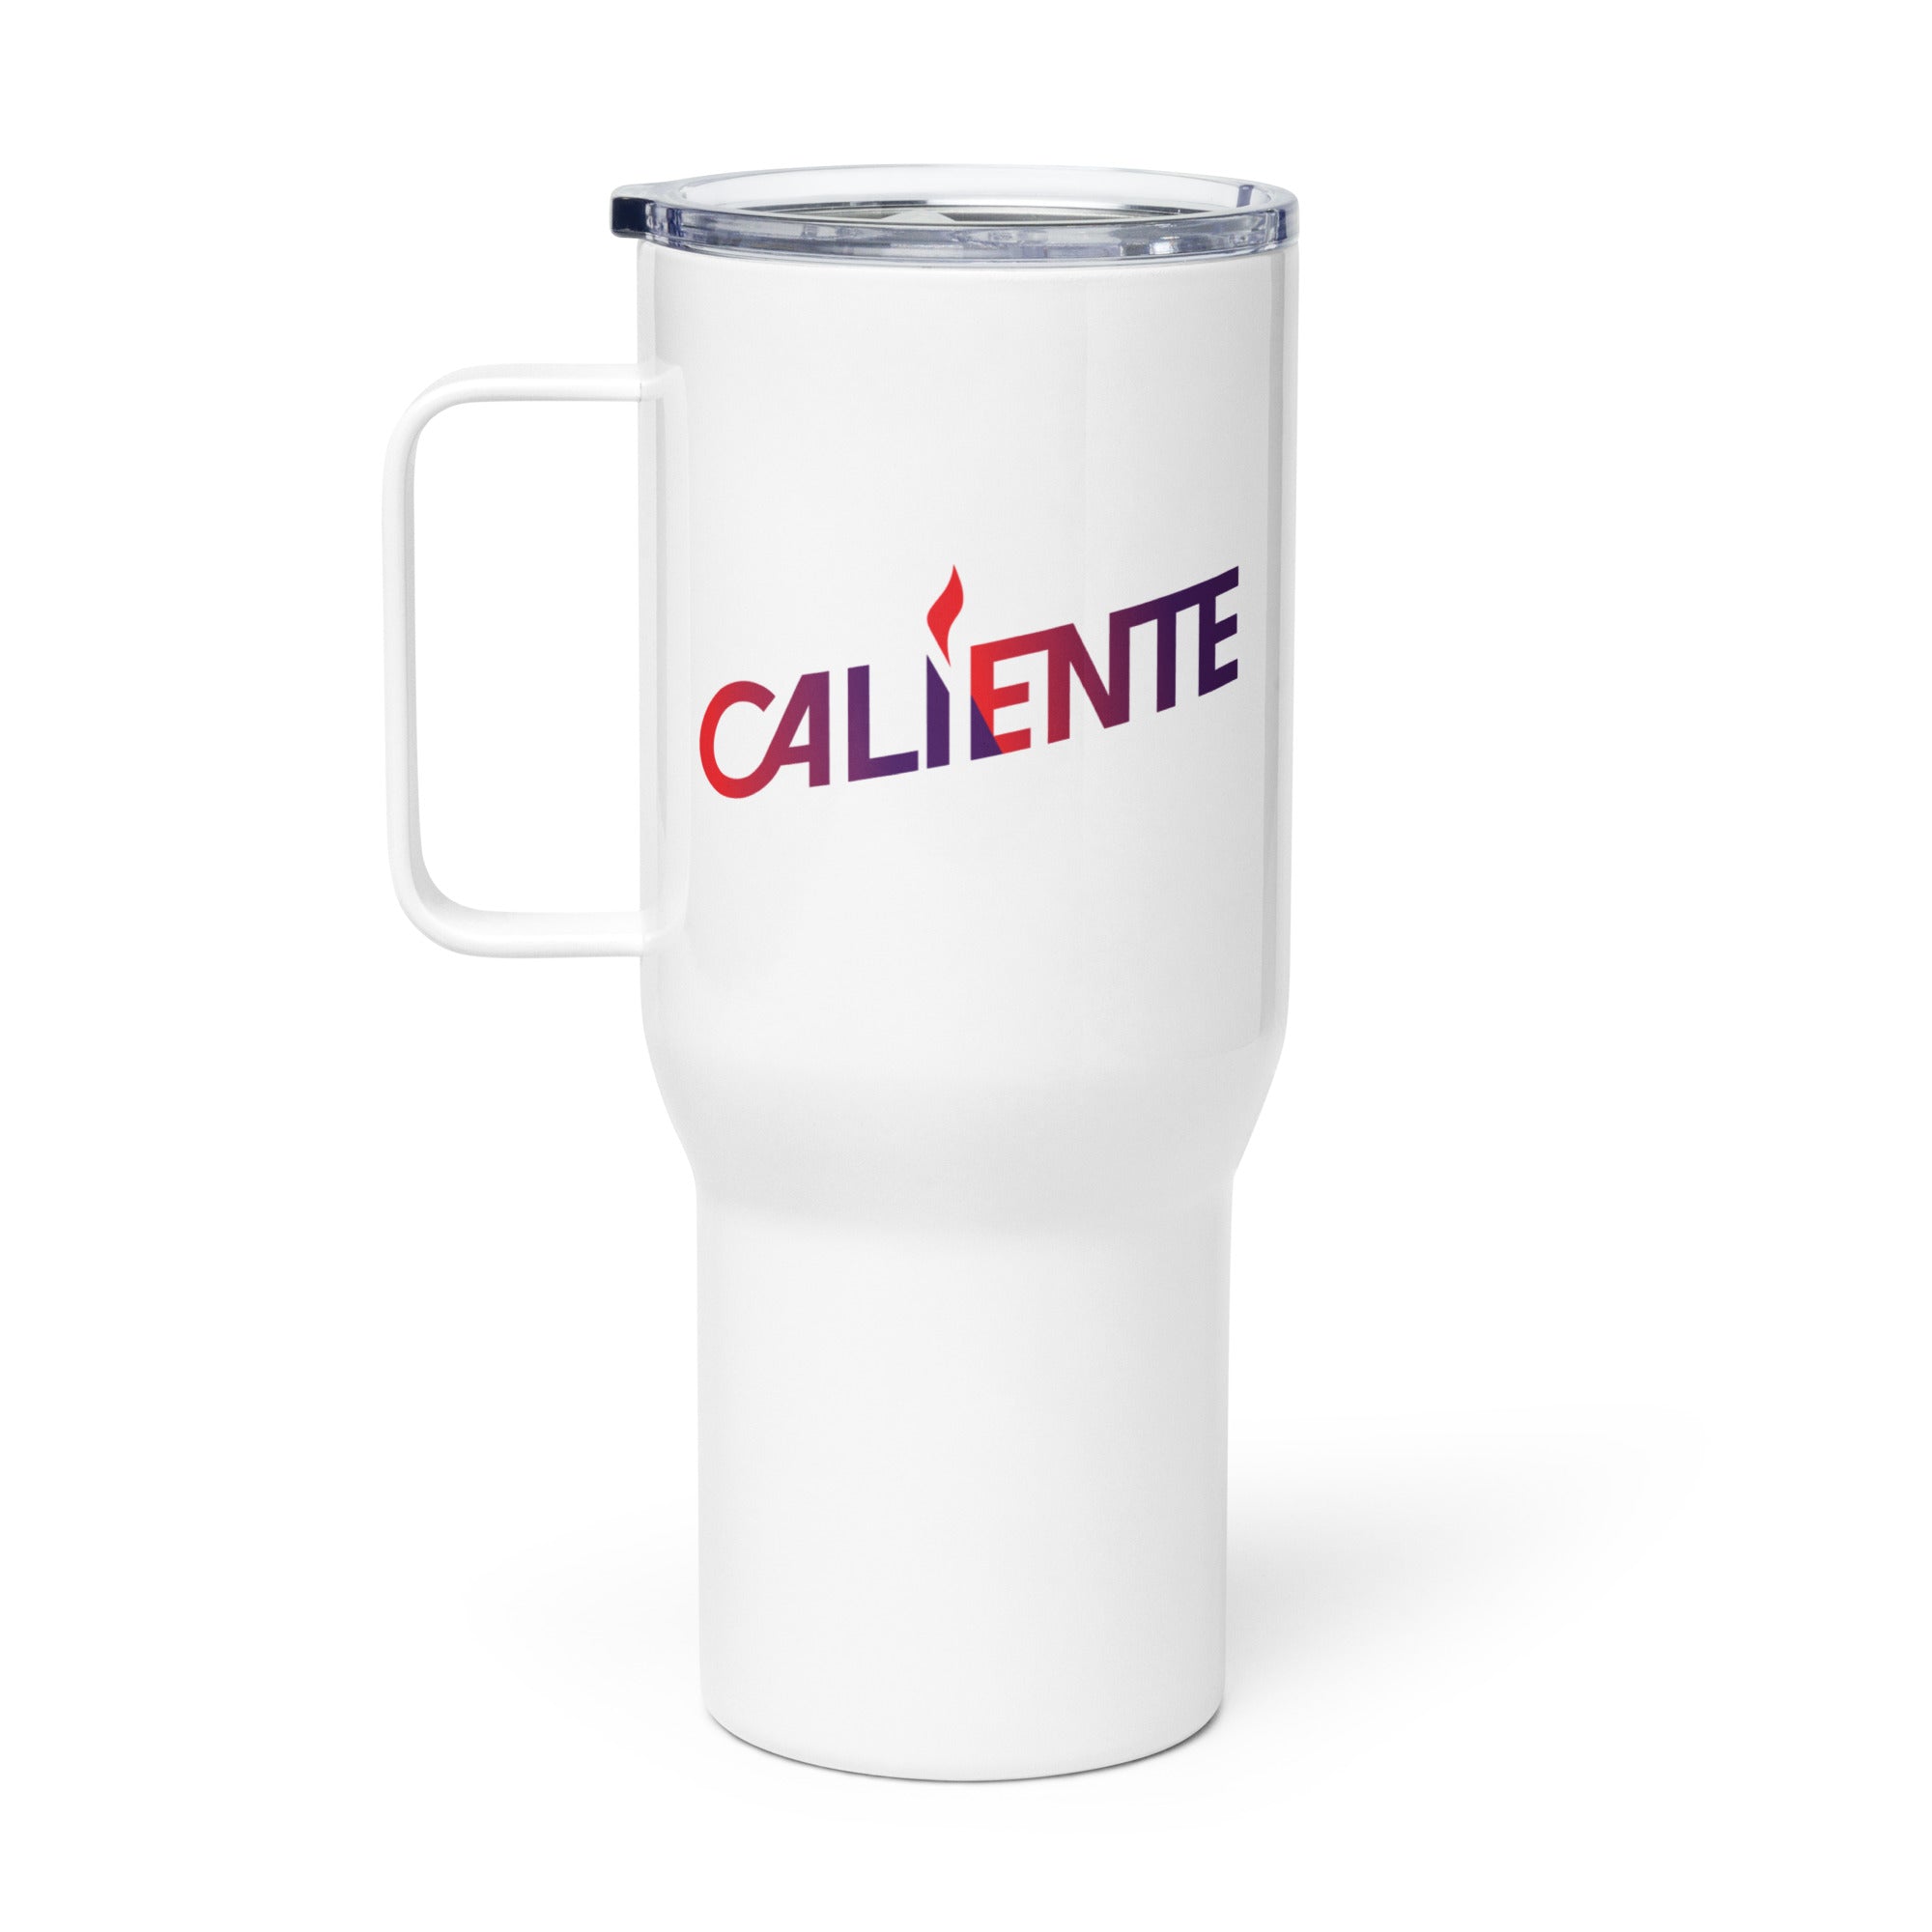 Caliente: Travel Mug